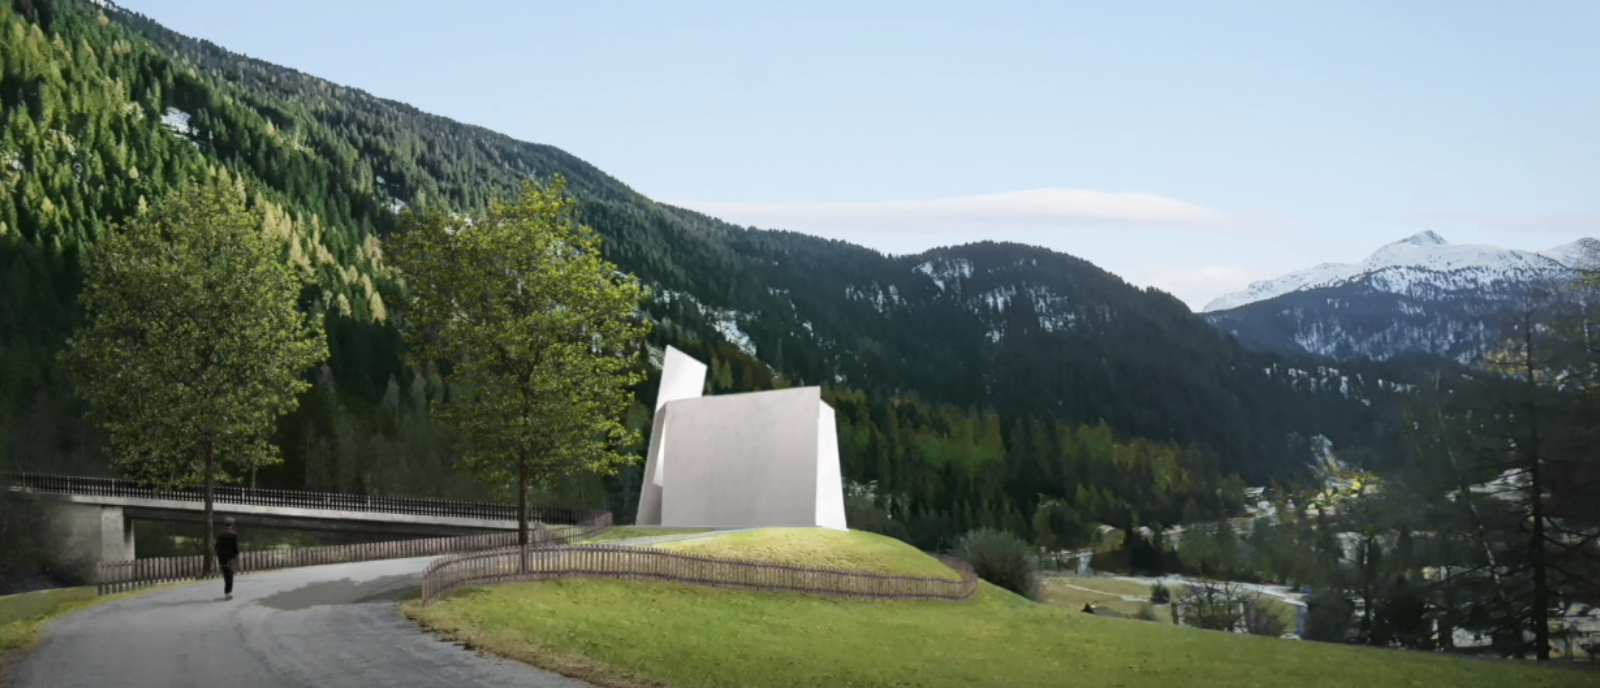 L'église d'Andeer doit être accessible après une courte promenade | Herzog & de Meuron